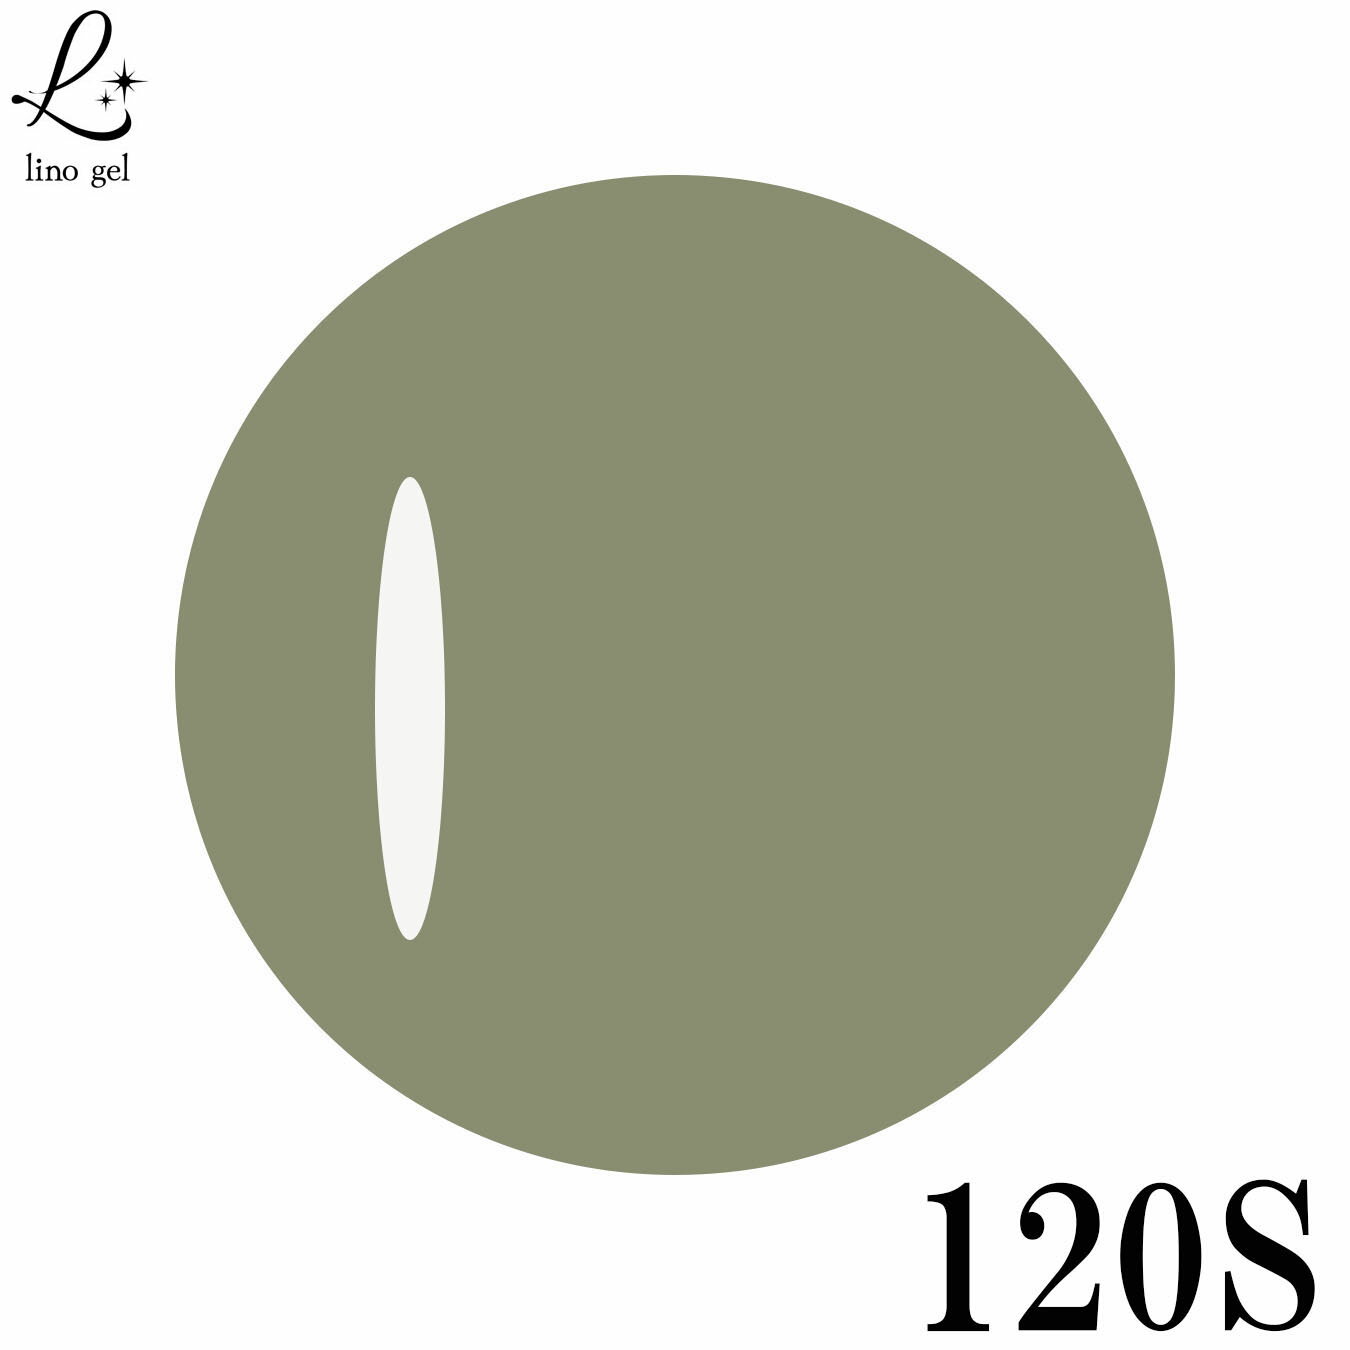 LinoGel リノジェル カラージェル 5g LED/UVライト対応 120S リキューチャ likyucha プロフェショナル ジェルネイル カラー ネイル ジェルネイルカラー ネイルアート くすみがかった緑色 利休色 りきゅういろ 緑色